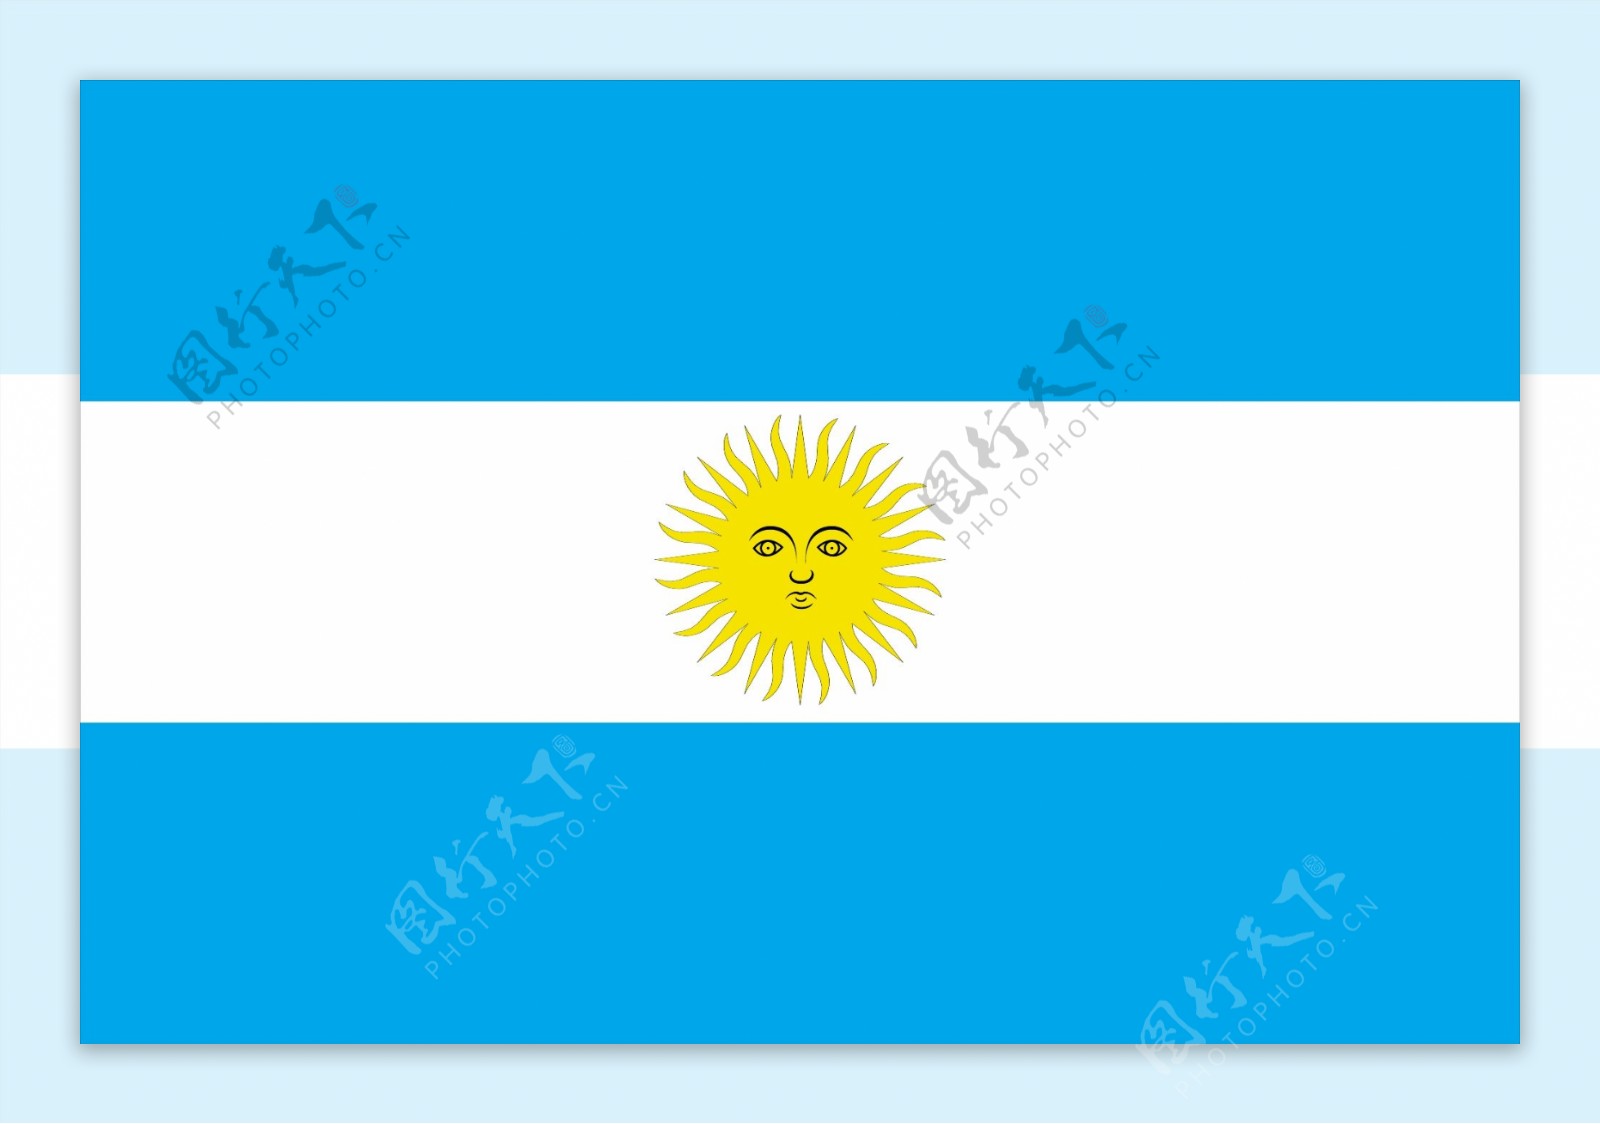 阿根廷国旗矢量素材